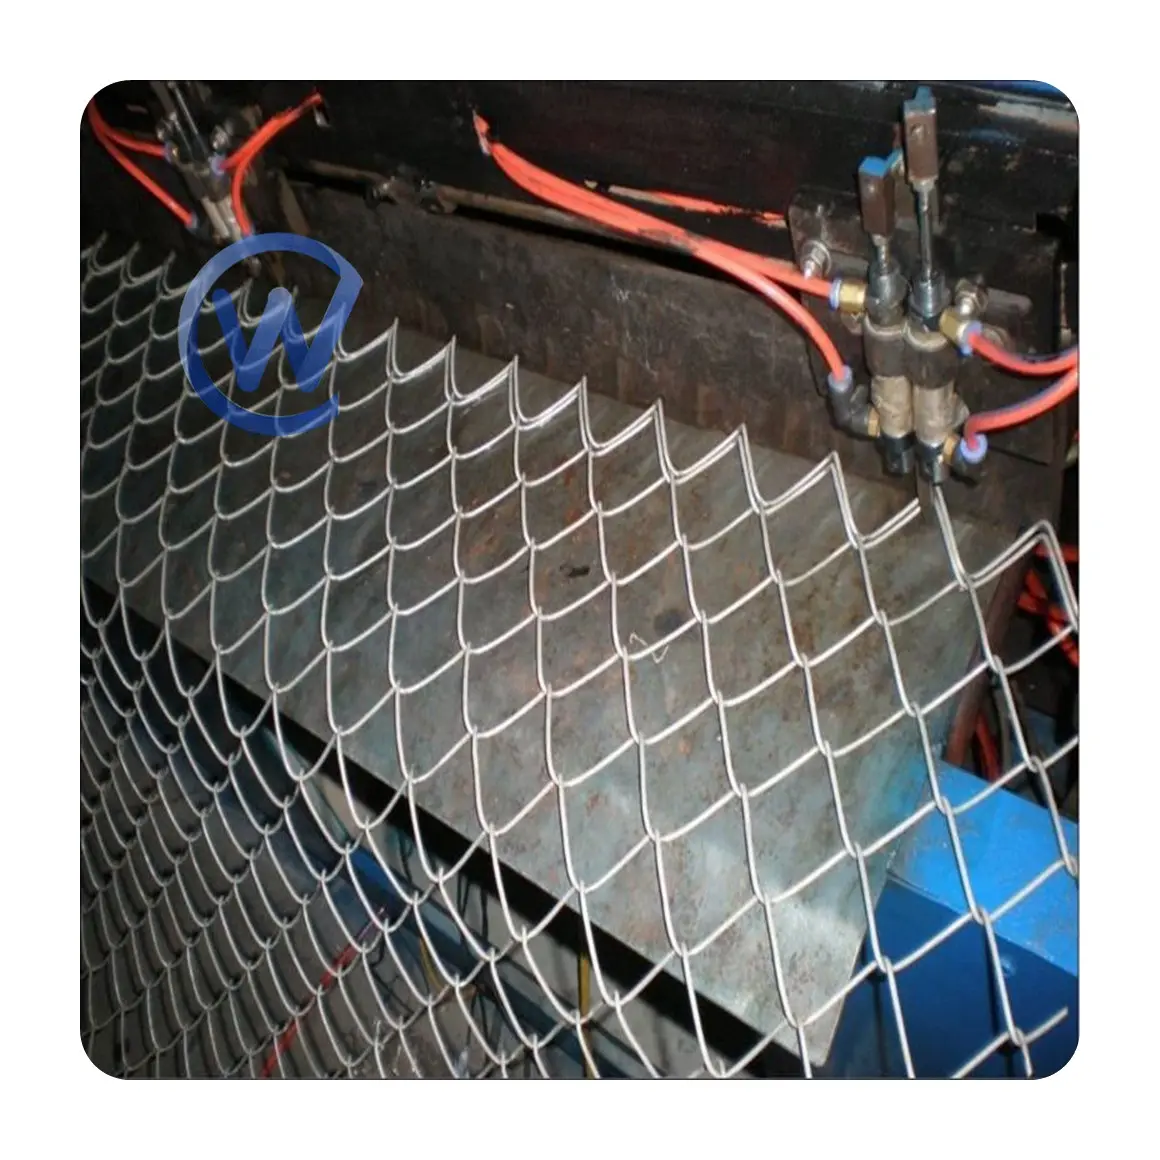 Maglie a catena pannelli di recinzione temporanei rivestiti di plastica maglia maglia maglia recinzione a rete rombica